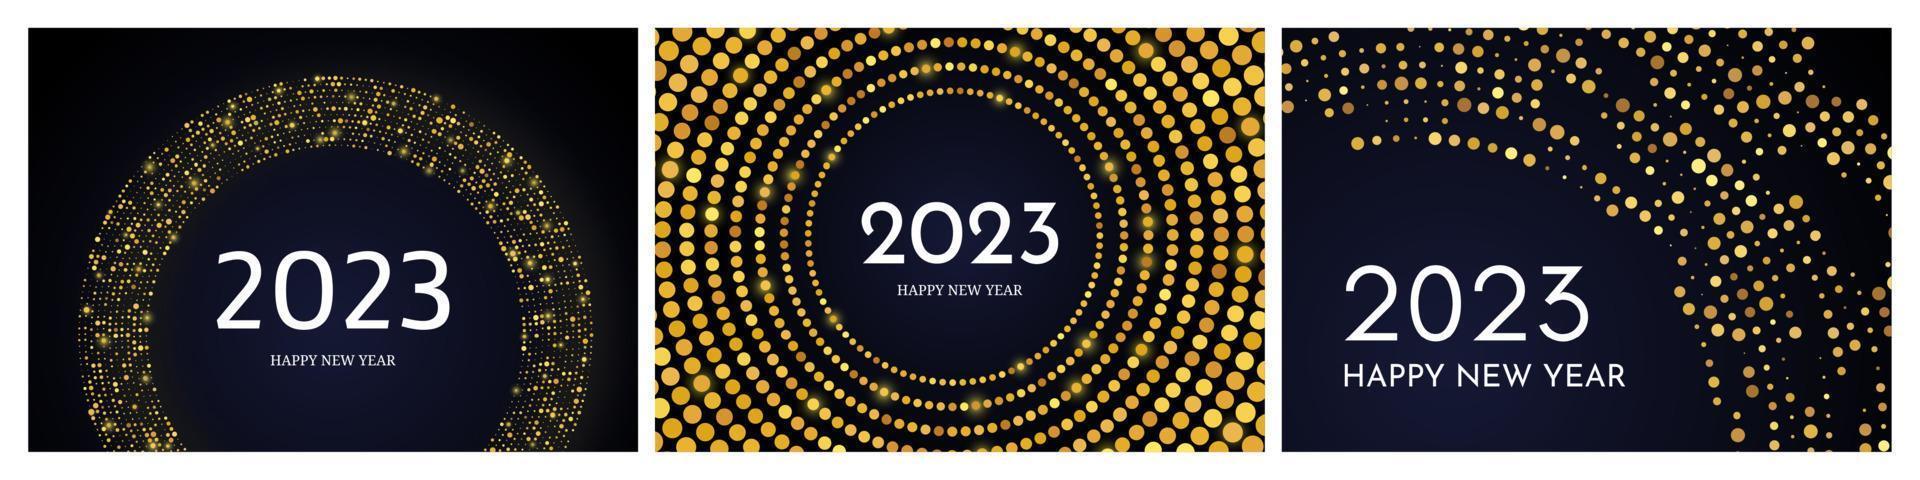 2023 bonne année de motif de paillettes d'or vecteur